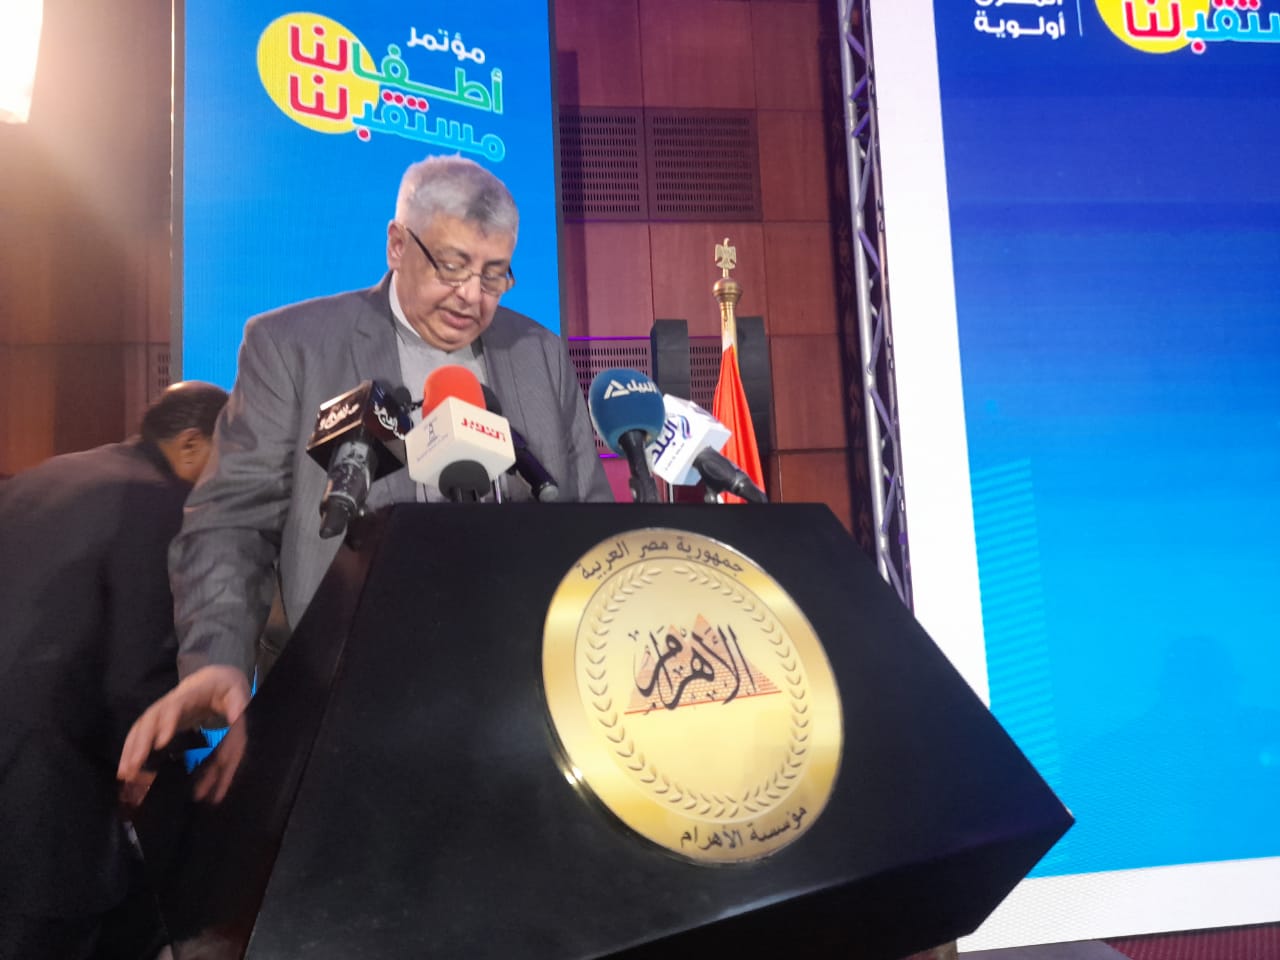 مستشار الرئيس للشئون الصحية: الدولة تبذل جهوداً مضنية للحفاظ على الأطفال باعتبارهم مستقبل مصر